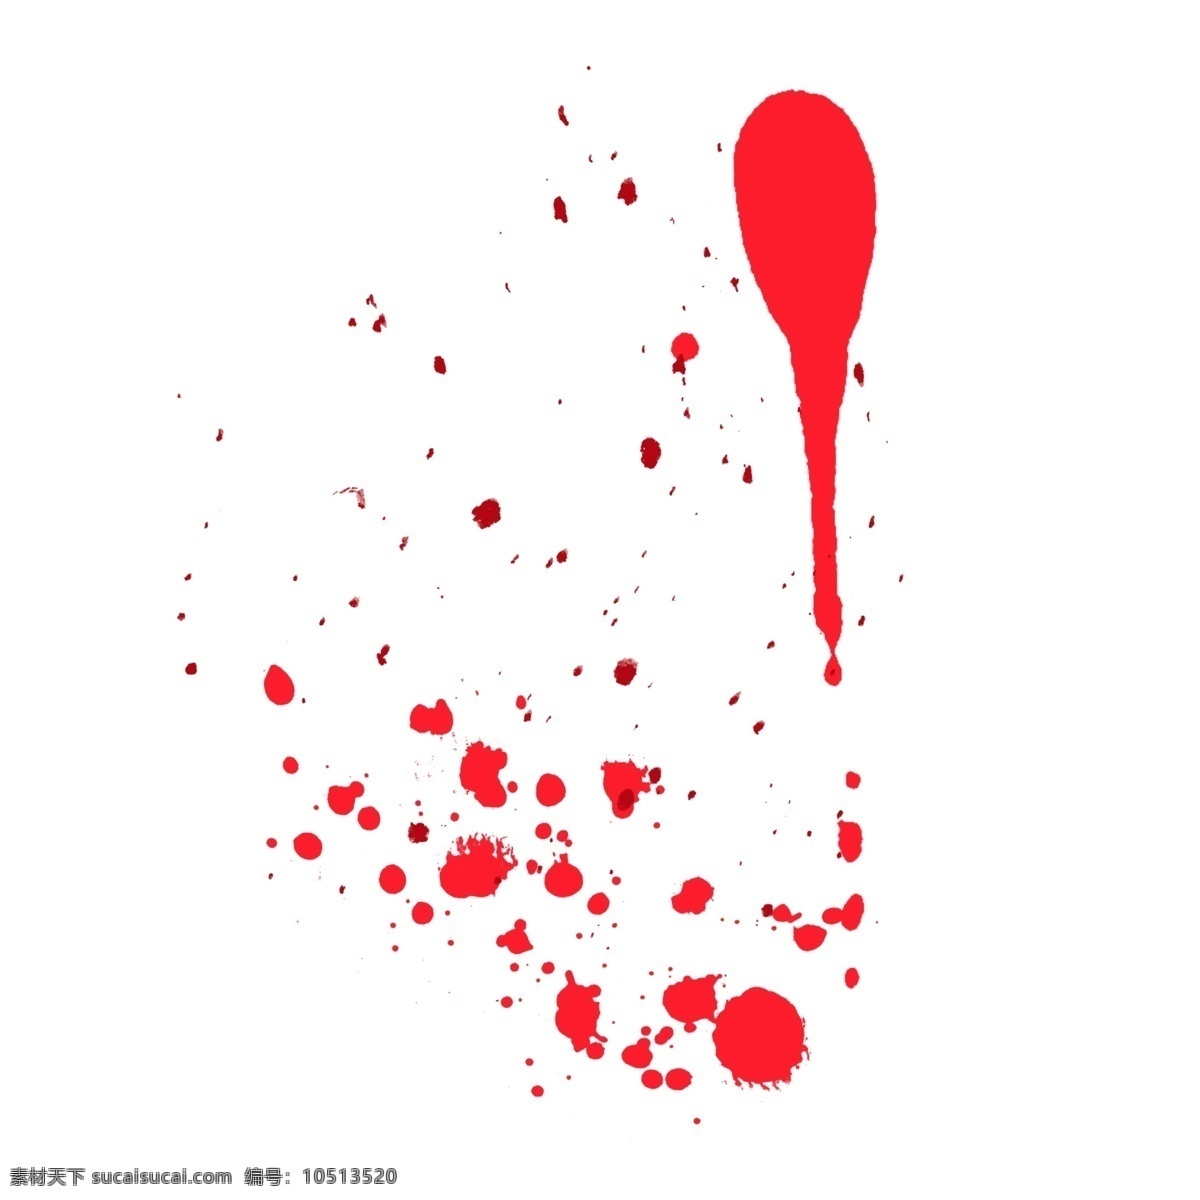 红色 血迹 抽象 效果 元素 泼墨 装饰 血 滴 污渍 载体 血滴 喷溅 血痕 痕迹 笔刷